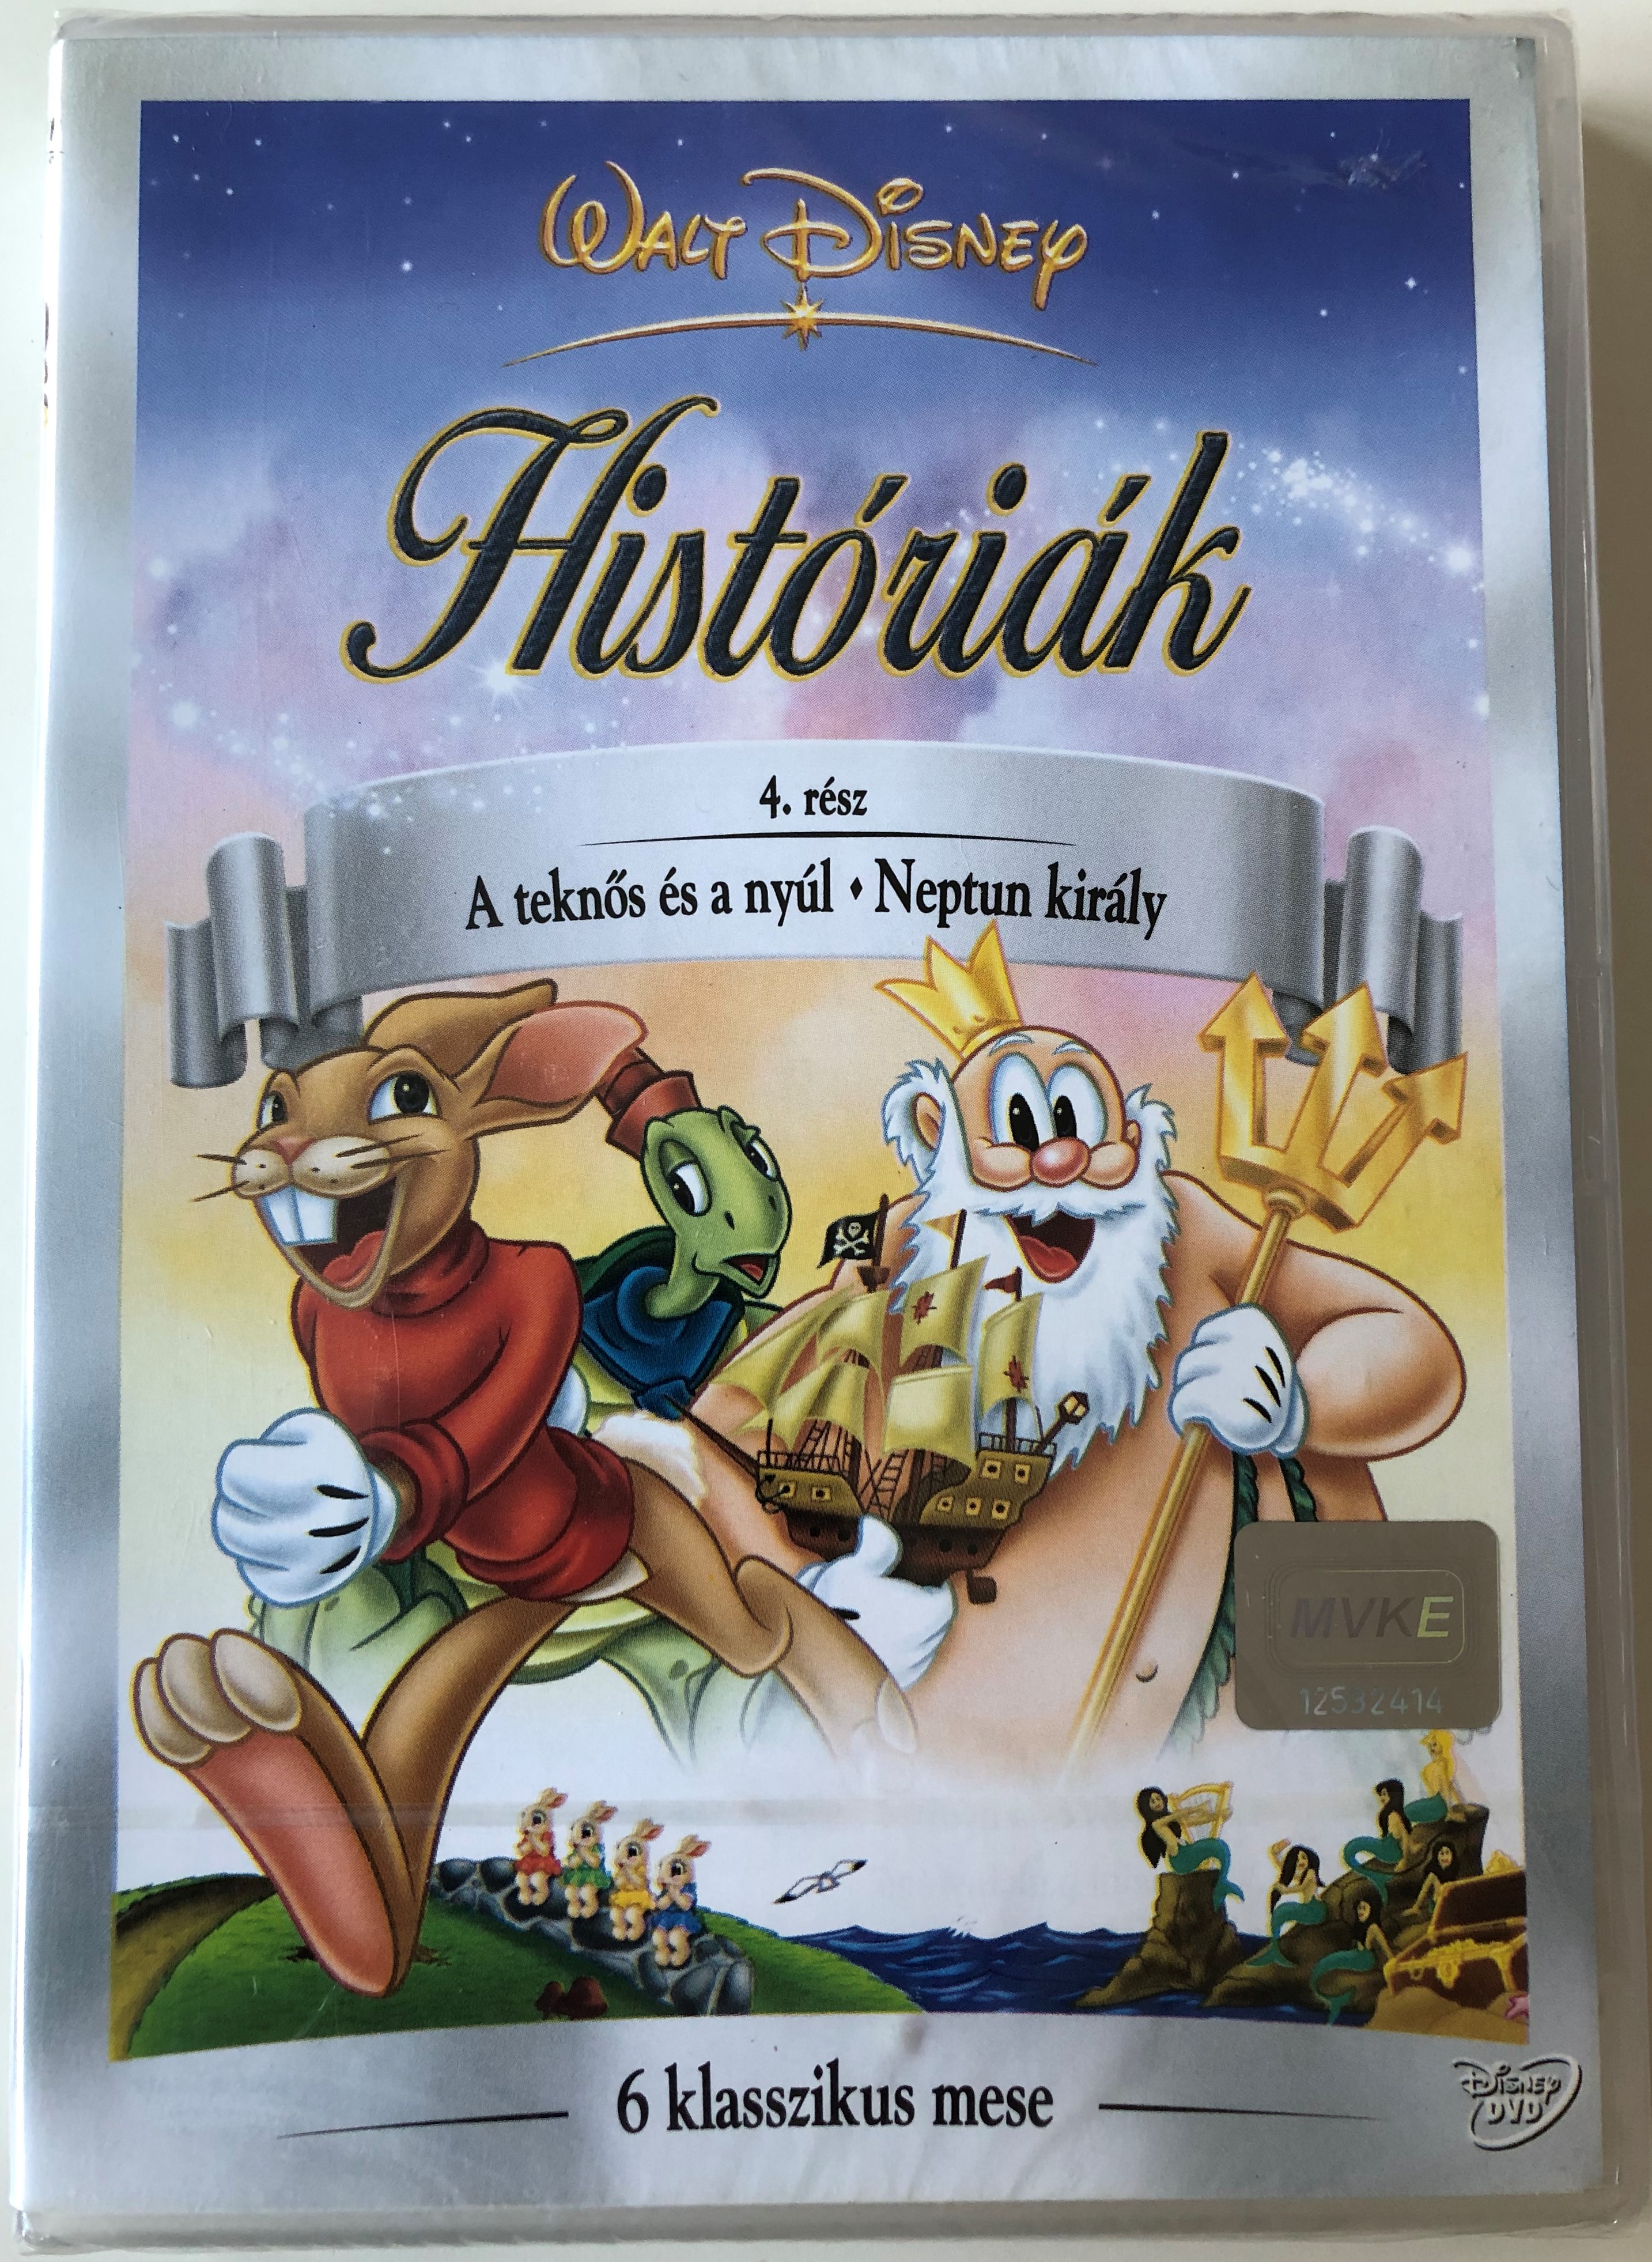 Disney's Fables Vol 4. DVD 2005 Disney Históriák 1